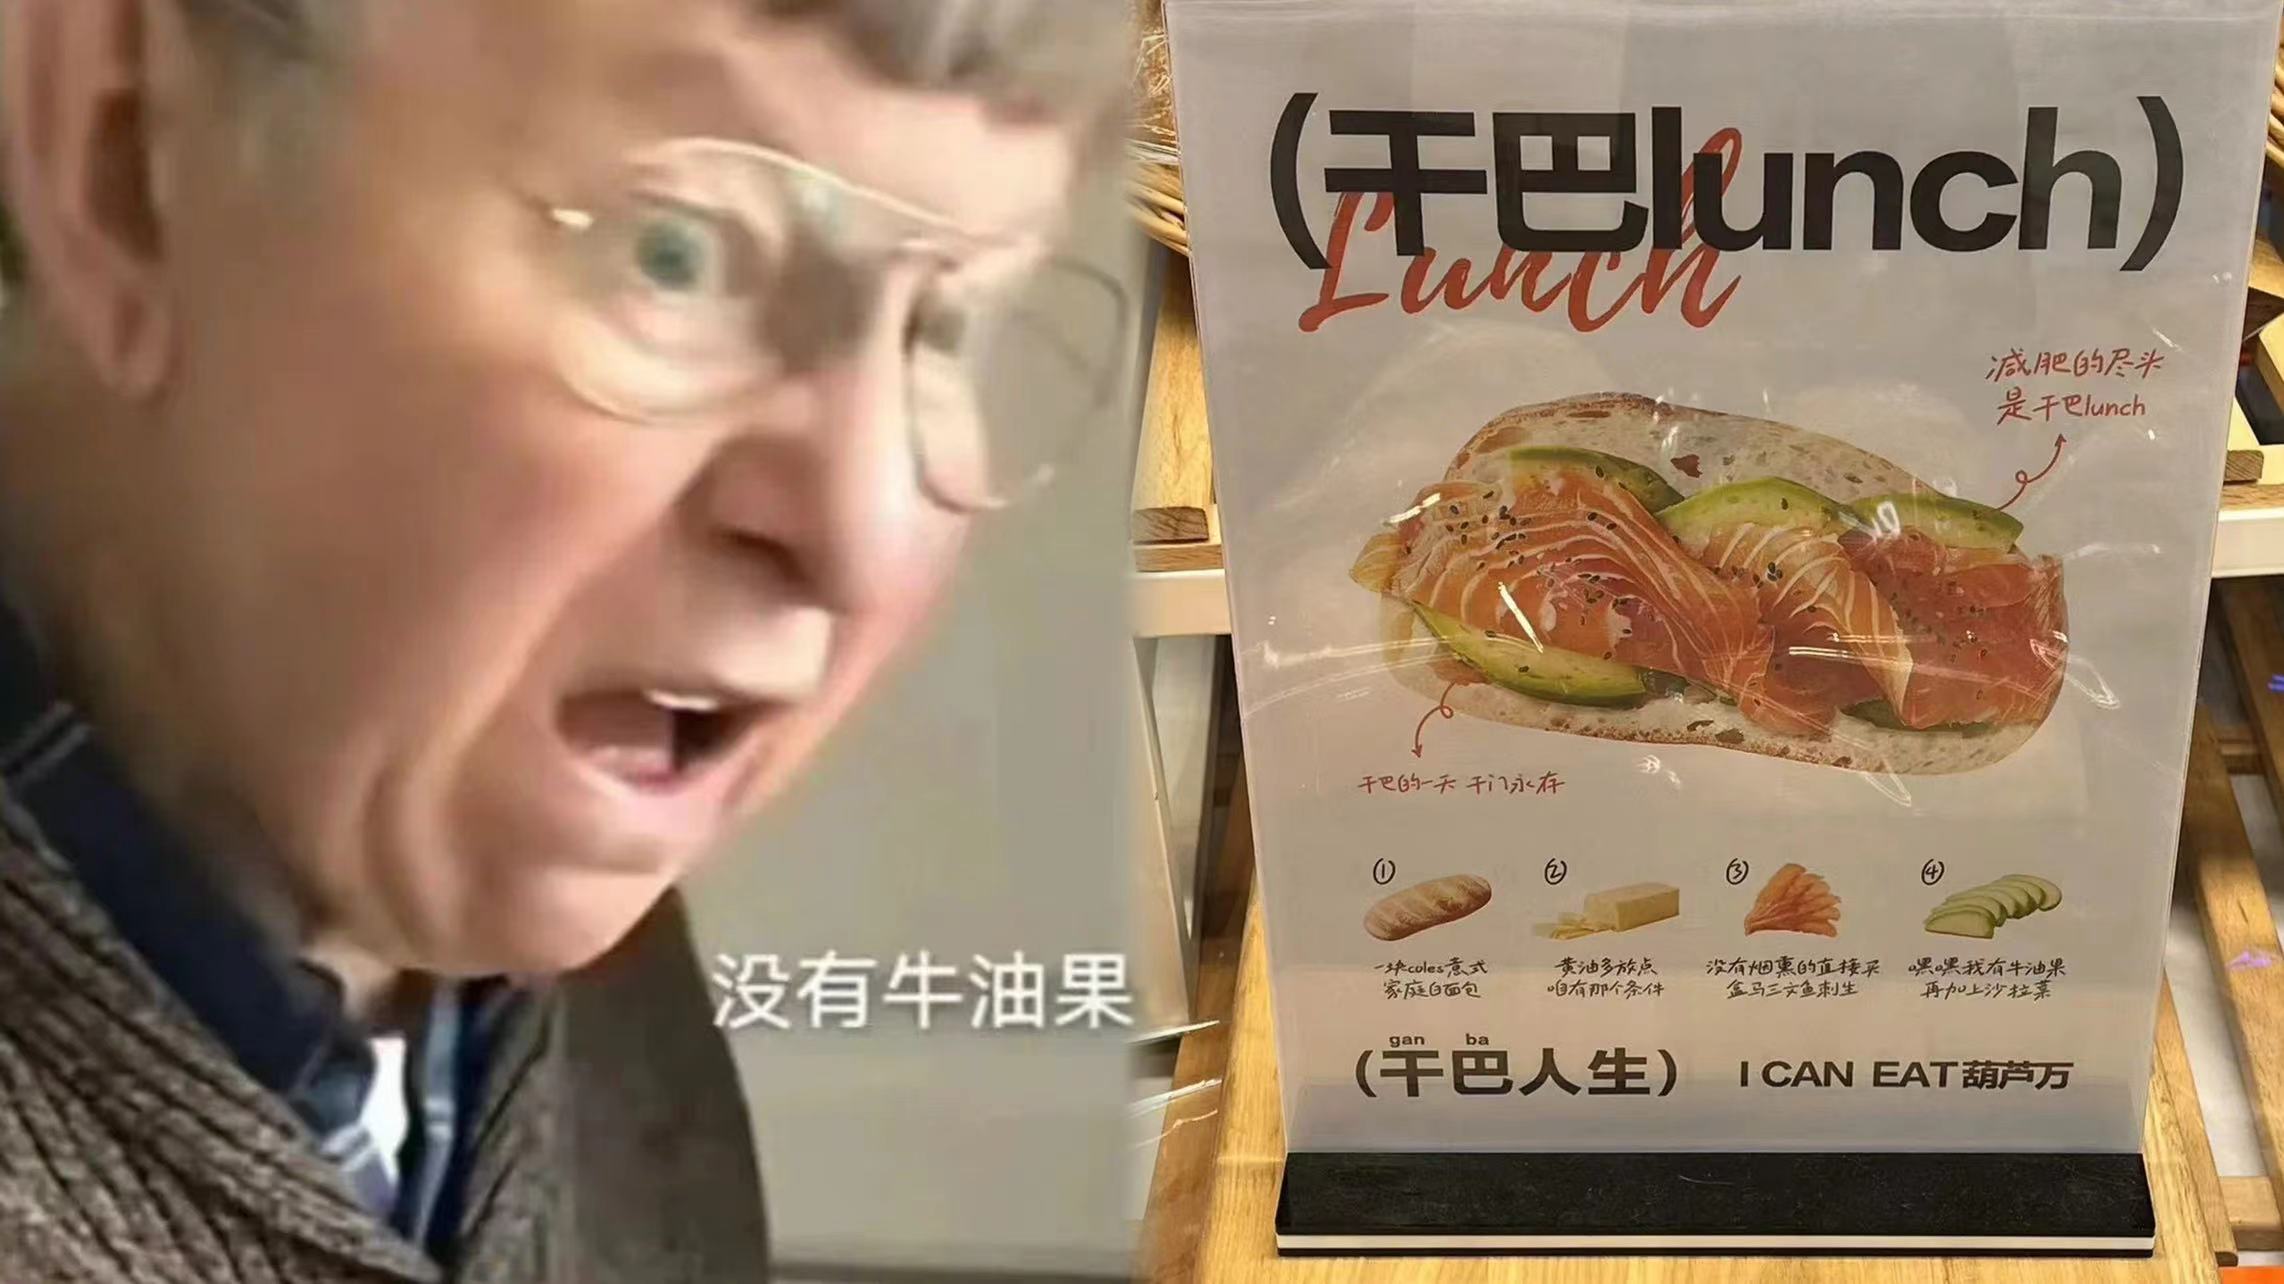 干巴lunch火爆全网！上海有超市火速上线同款套餐！笑死在评论区里